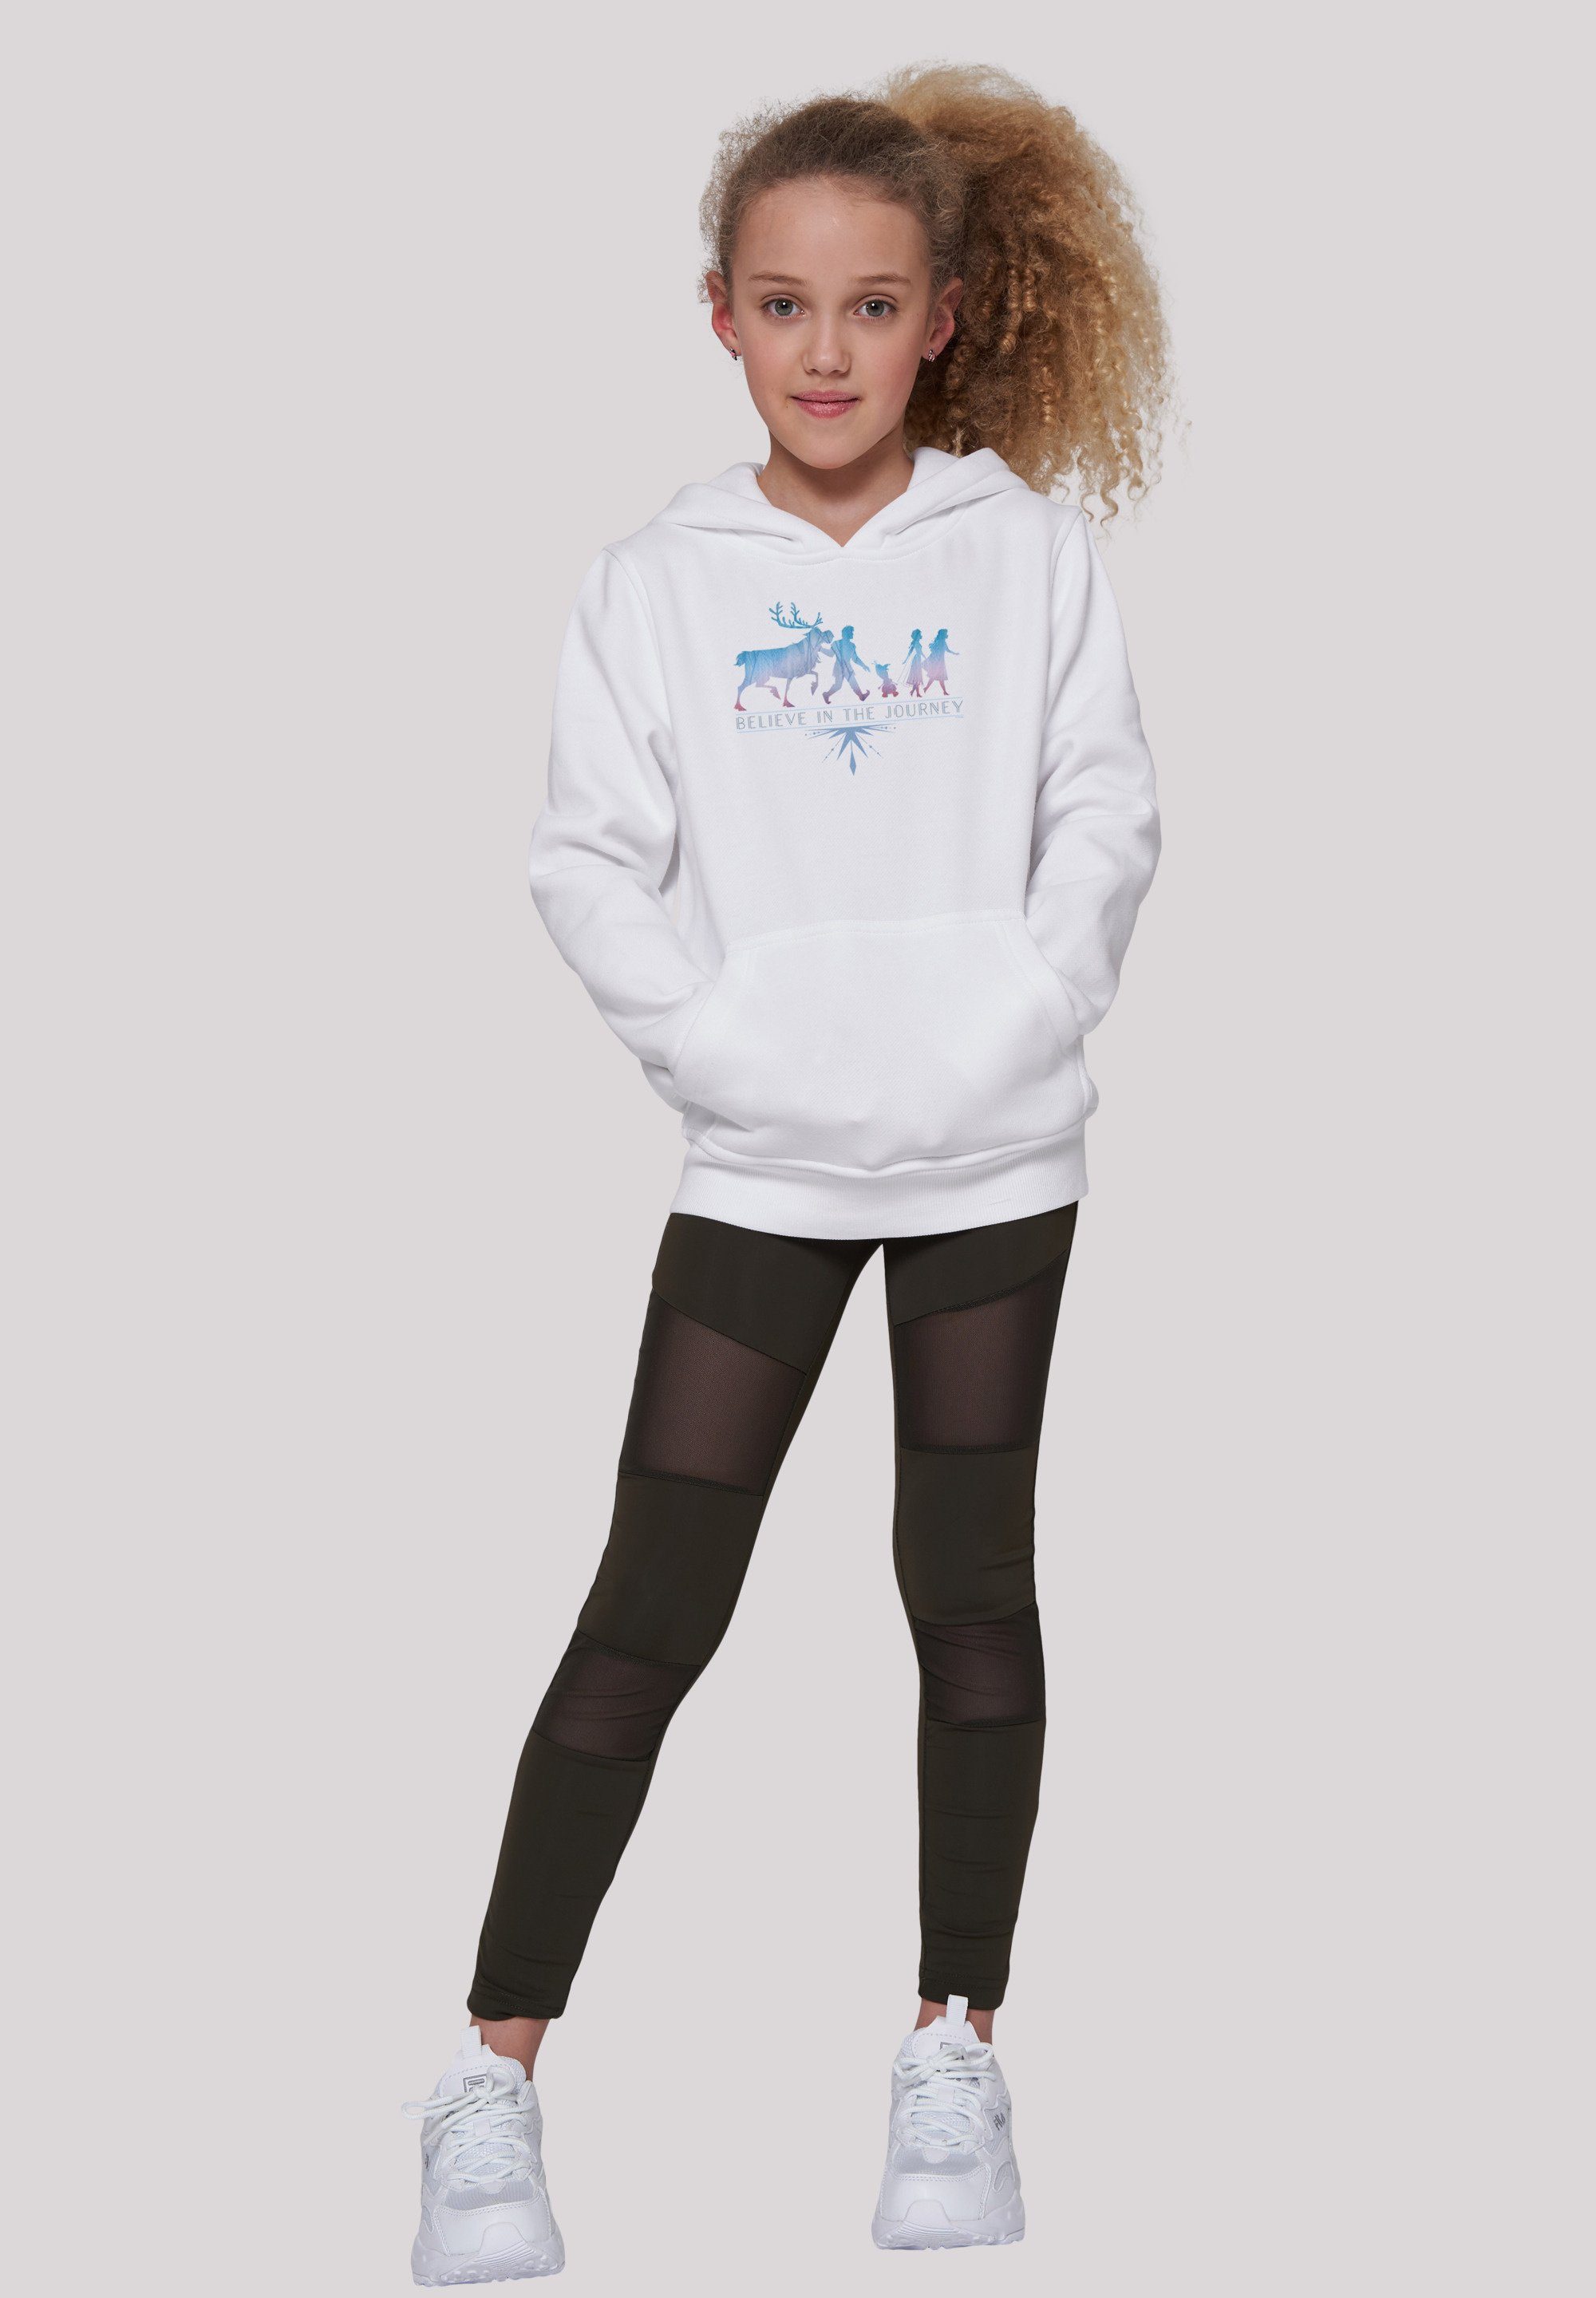 Kinder,Premium Merch,Jungen,Mädchen,Bedruckt Journey Disney F4NT4STIC Believe Frozen Sweatshirt In Unisex The weiß 2